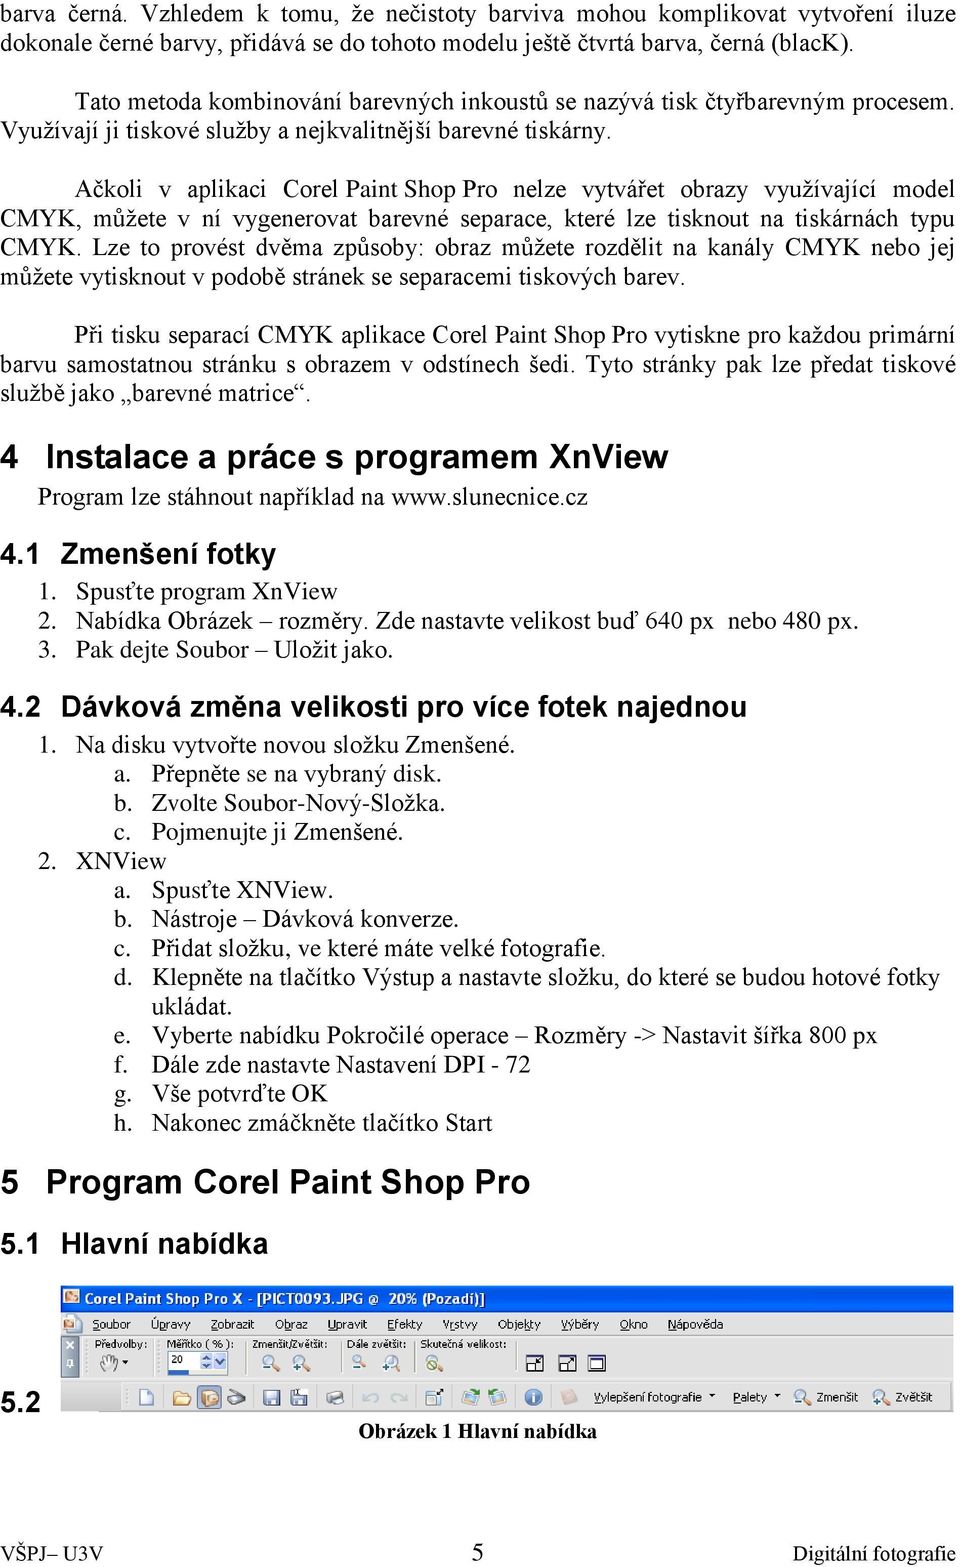 Ačkoli v aplikaci Corel Paint Shop Pro nelze vytvářet obrazy využívající model CMYK, můžete v ní vygenerovat barevné separace, které lze tisknout na tiskárnách typu CMYK.